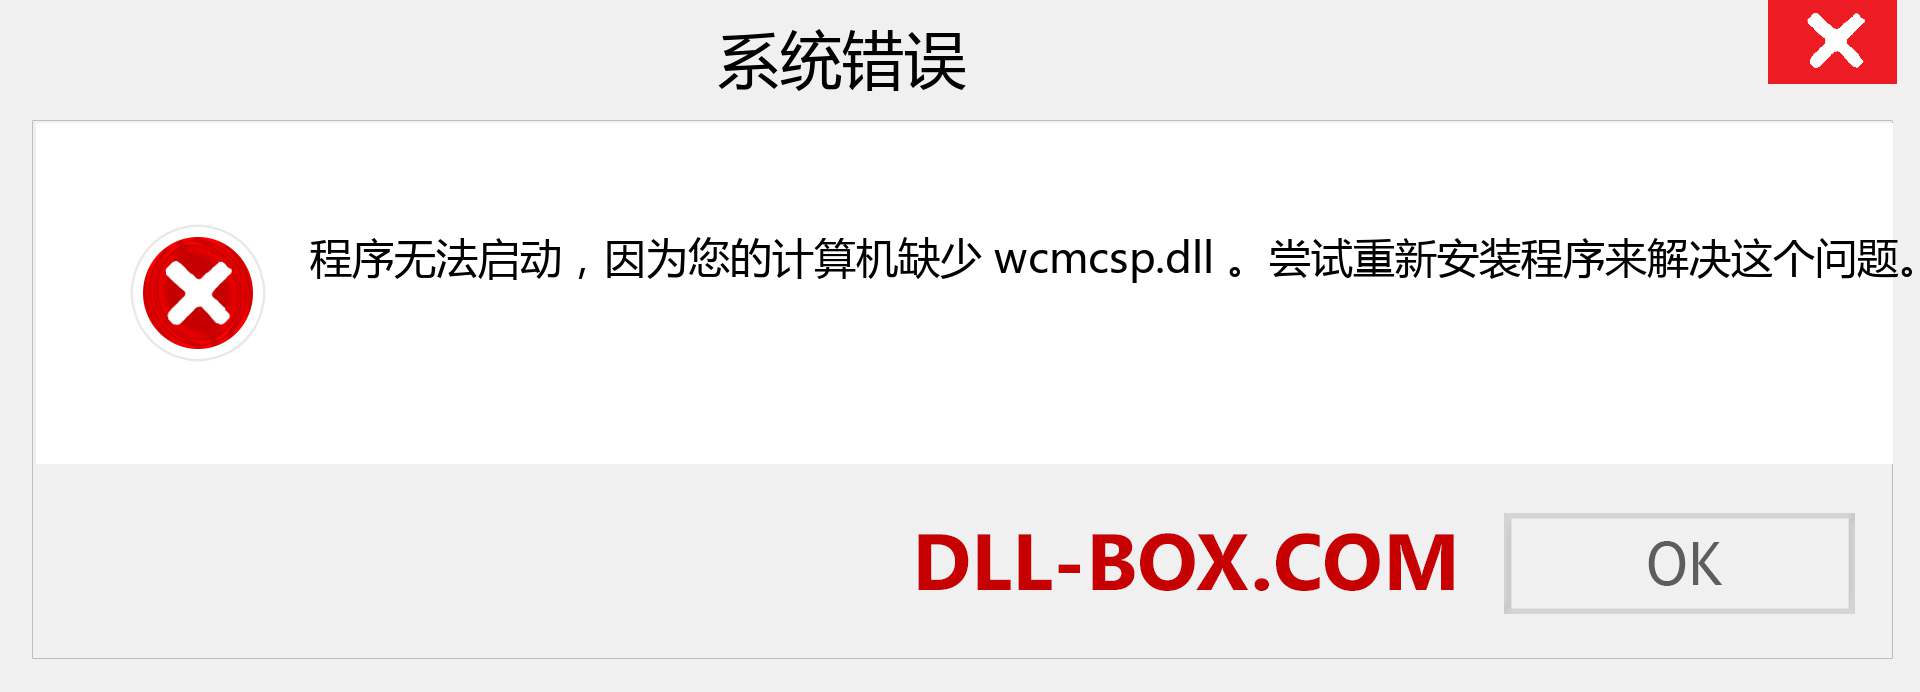 wcmcsp.dll 文件丢失？。 适用于 Windows 7、8、10 的下载 - 修复 Windows、照片、图像上的 wcmcsp dll 丢失错误